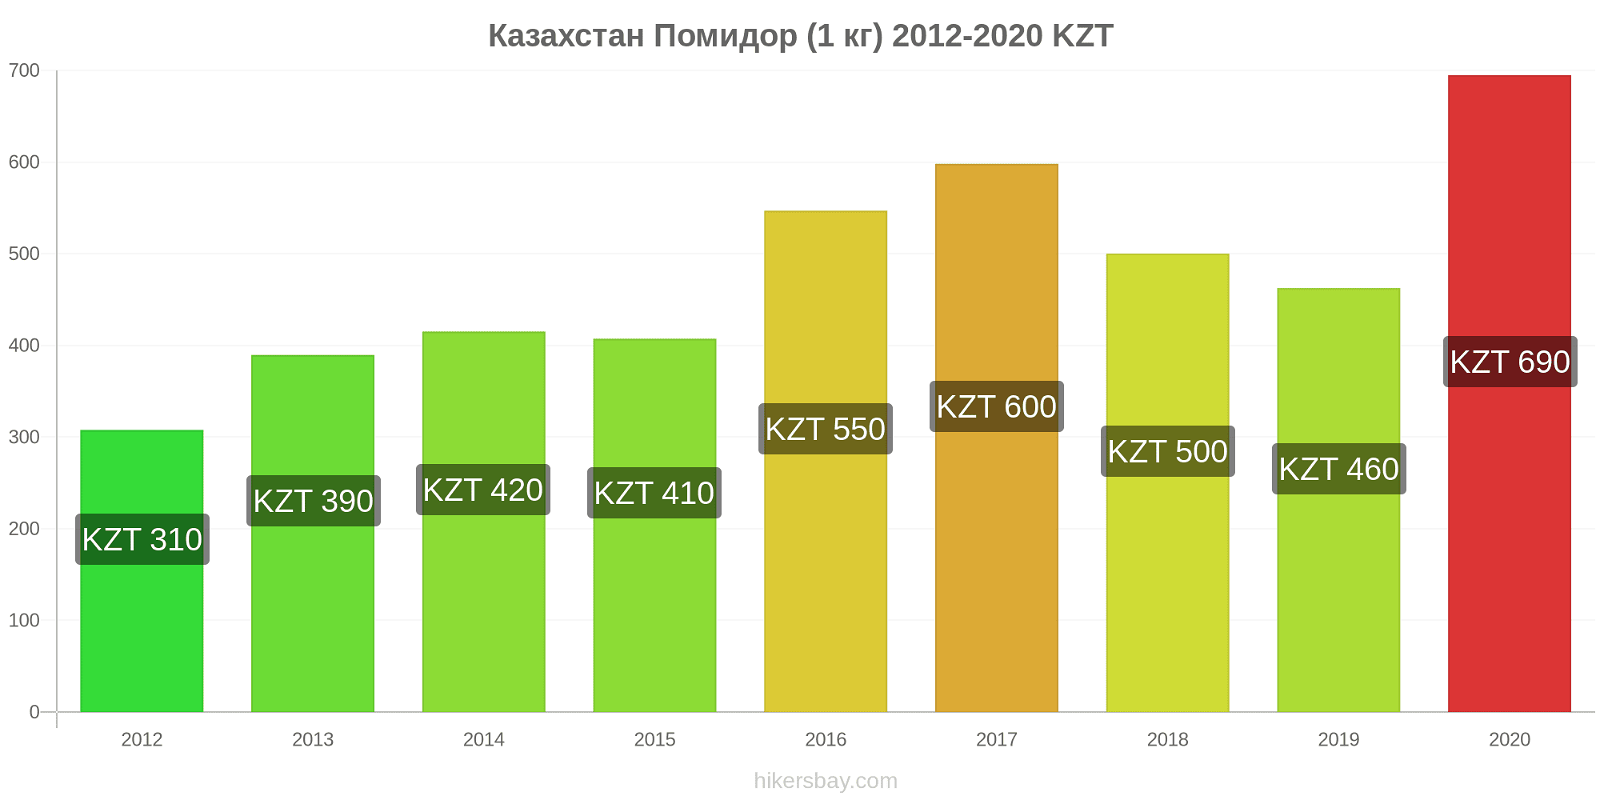 Казахстан изменения цен Помидор (1 кг) hikersbay.com